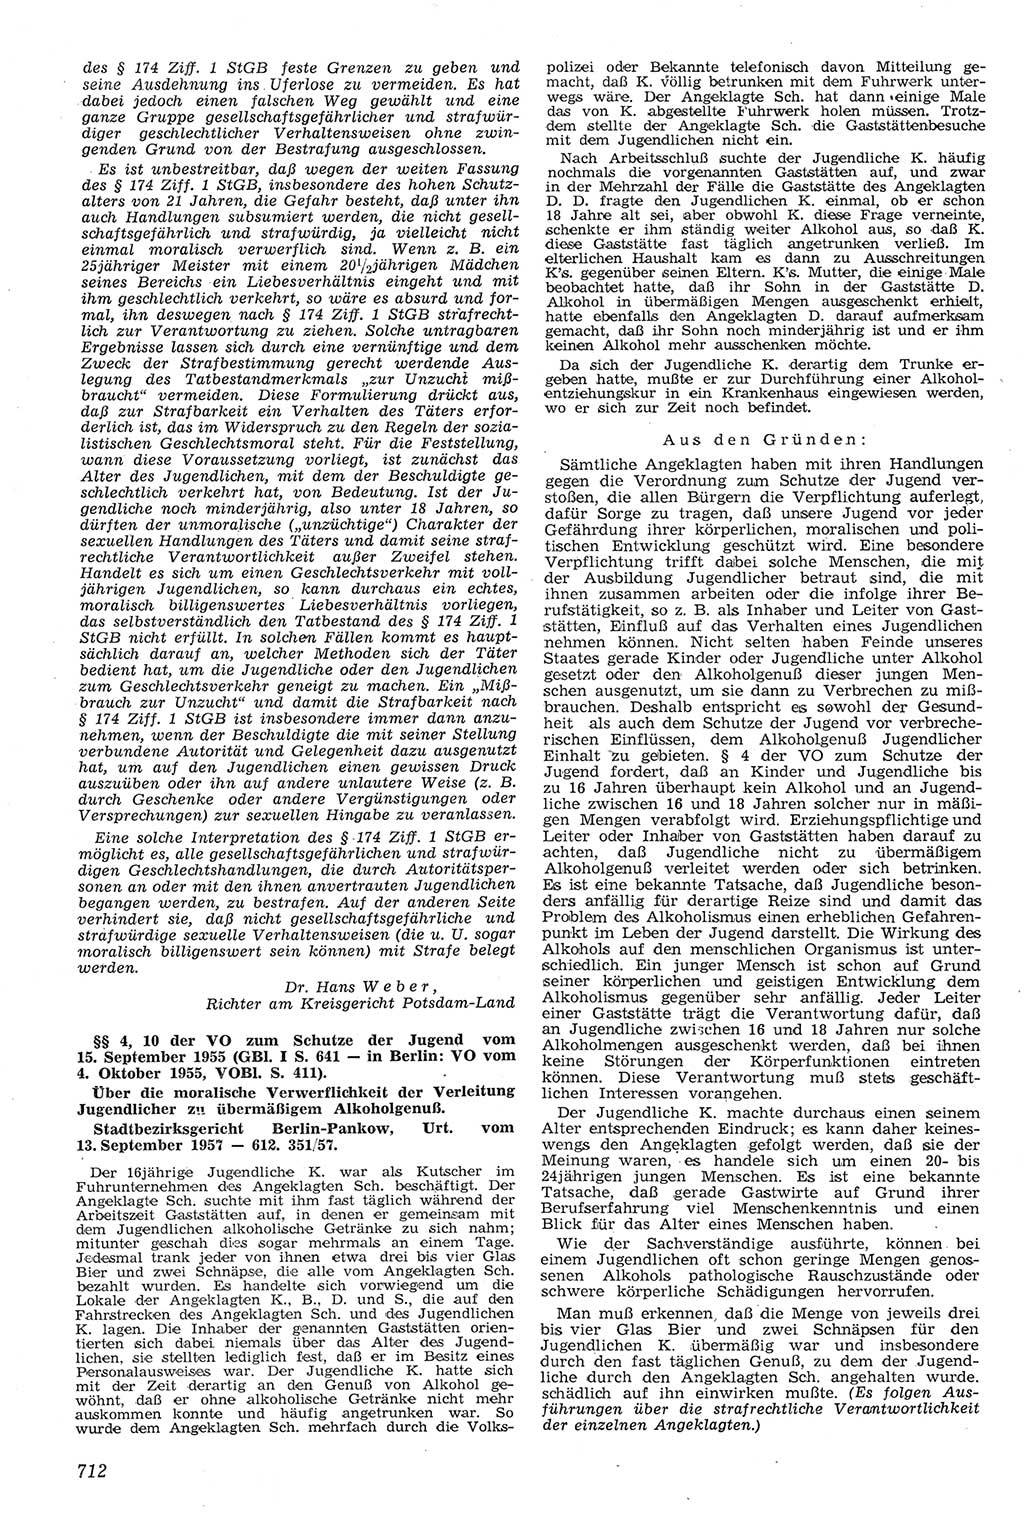 Neue Justiz (NJ), Zeitschrift für Recht und Rechtswissenschaft [Deutsche Demokratische Republik (DDR)], 11. Jahrgang 1957, Seite 712 (NJ DDR 1957, S. 712)